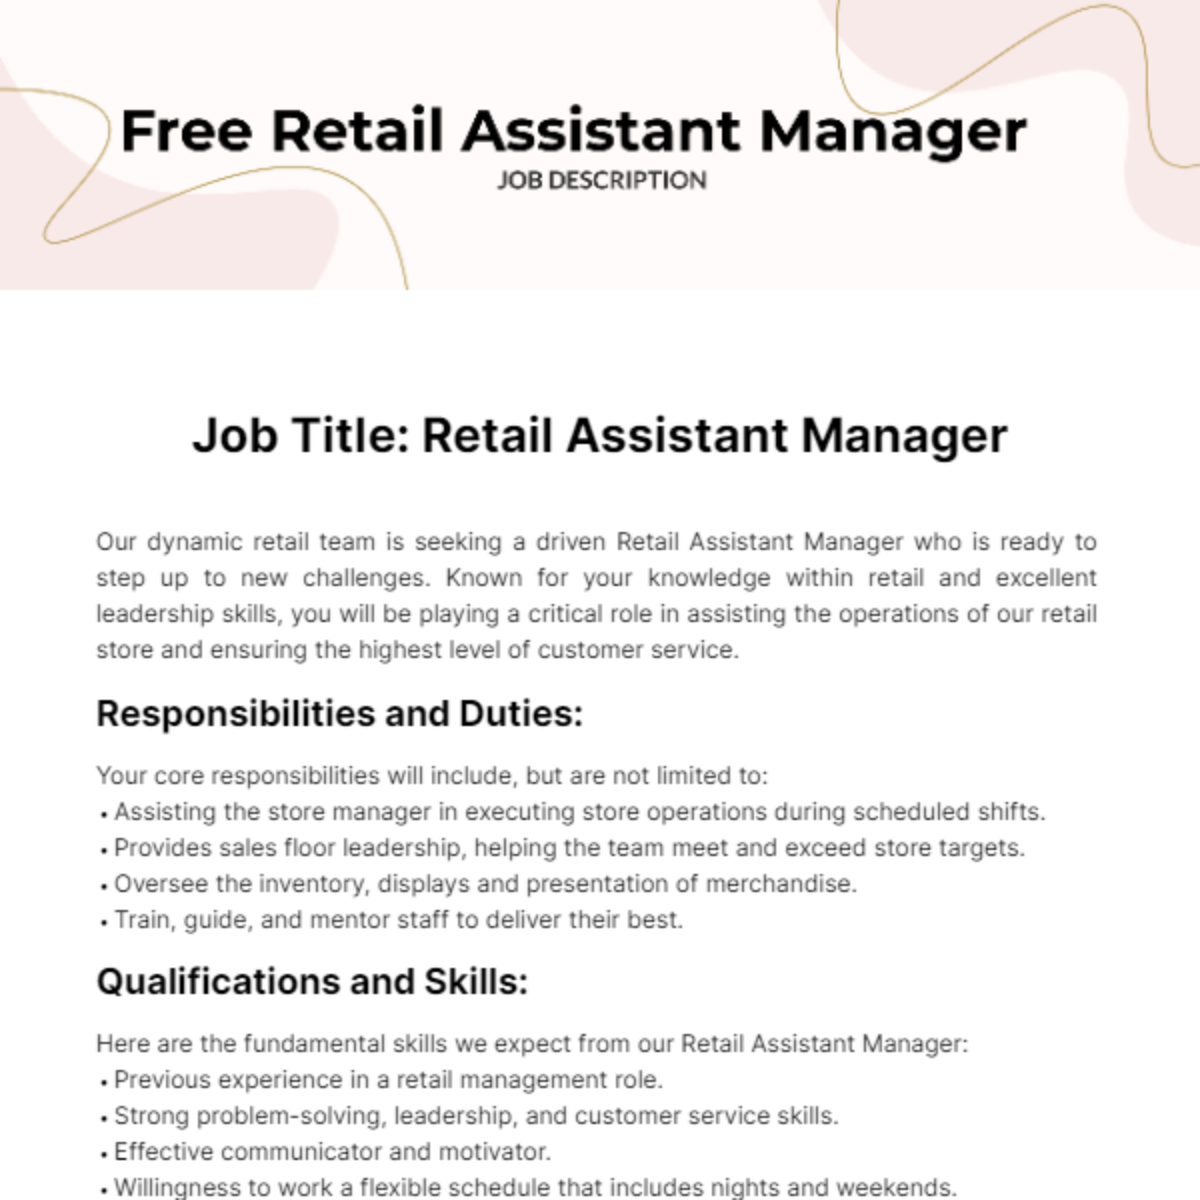 Free Retail Assistant Manager Job Description Template